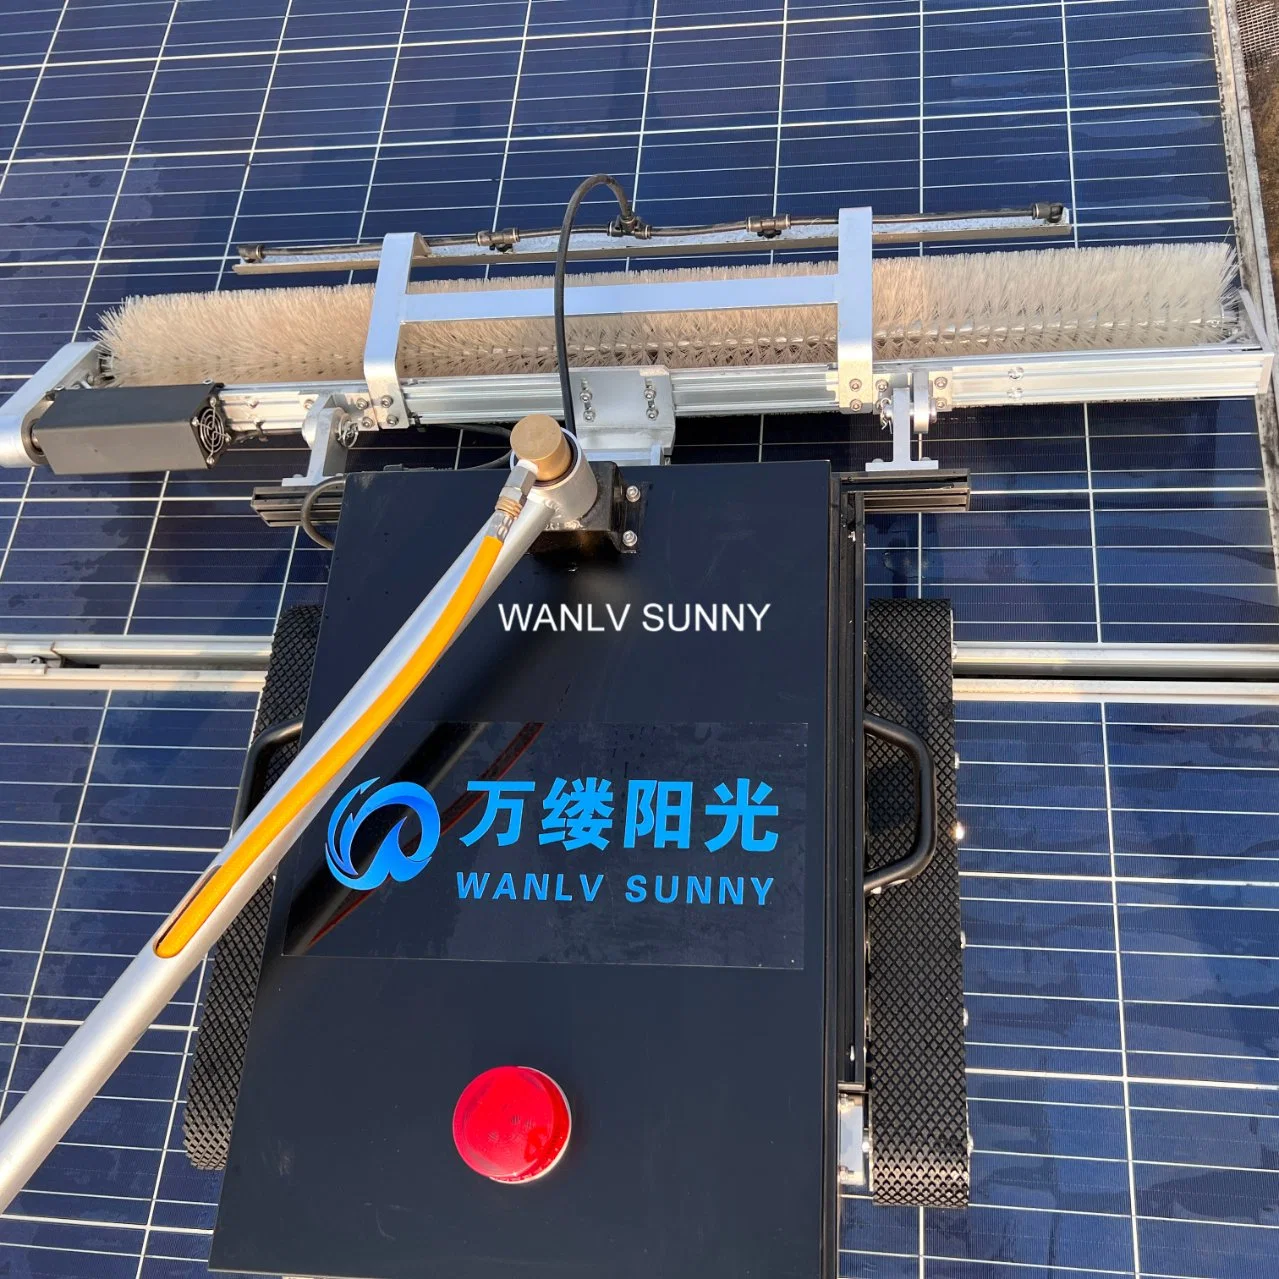 تنظيف اللوحة الشمسية الروبوت الشمسي Reinigung Solar أدوات التنظيف لمدة مالكو المزارع الشمسية التجاريين